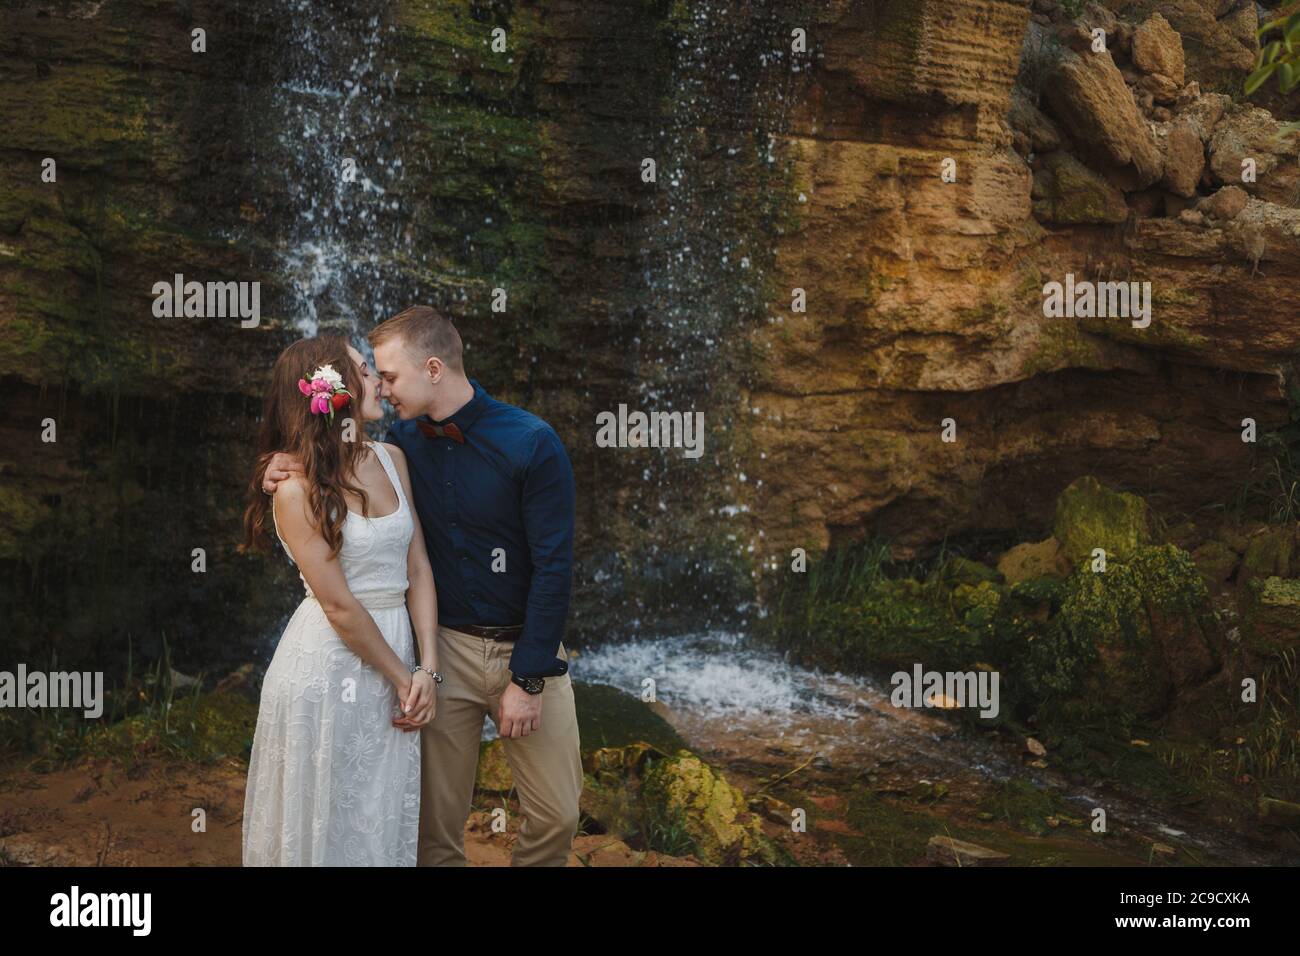 Cérémonie de mariage en plein air, marié souriant et mariée sont embrasser et embrasser devant une petite cascade Banque D'Images